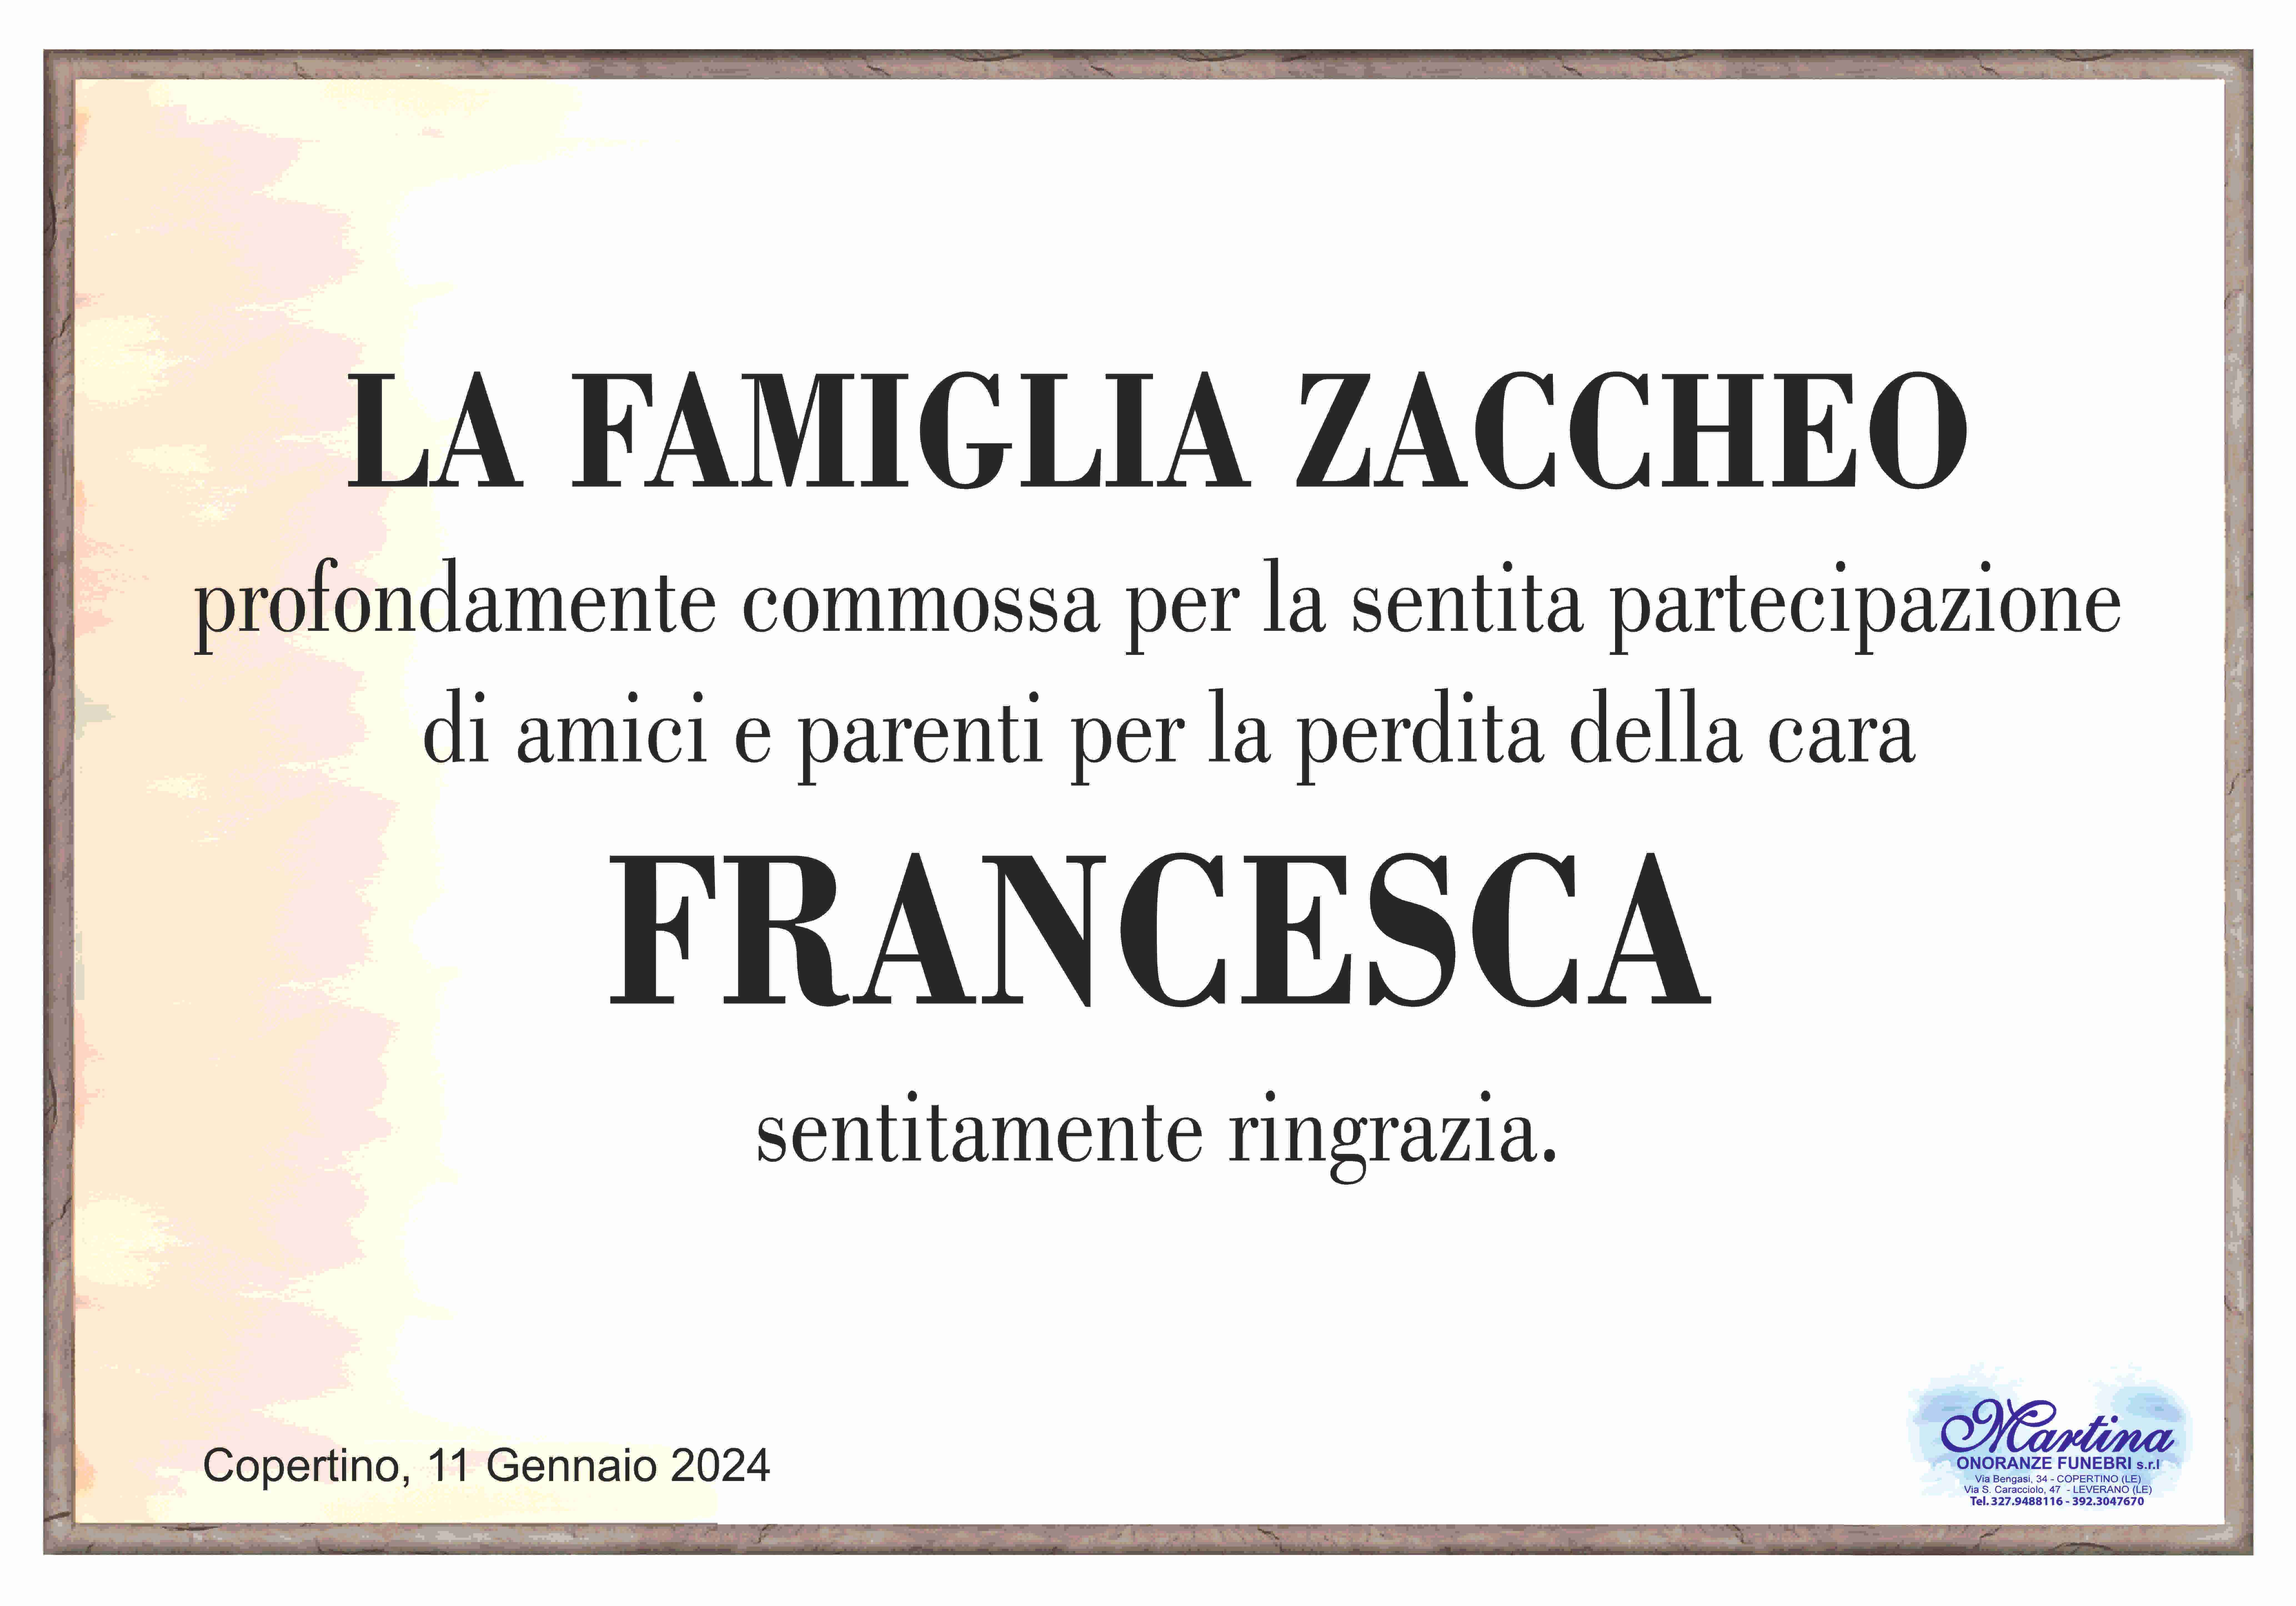 Francesca Strafella